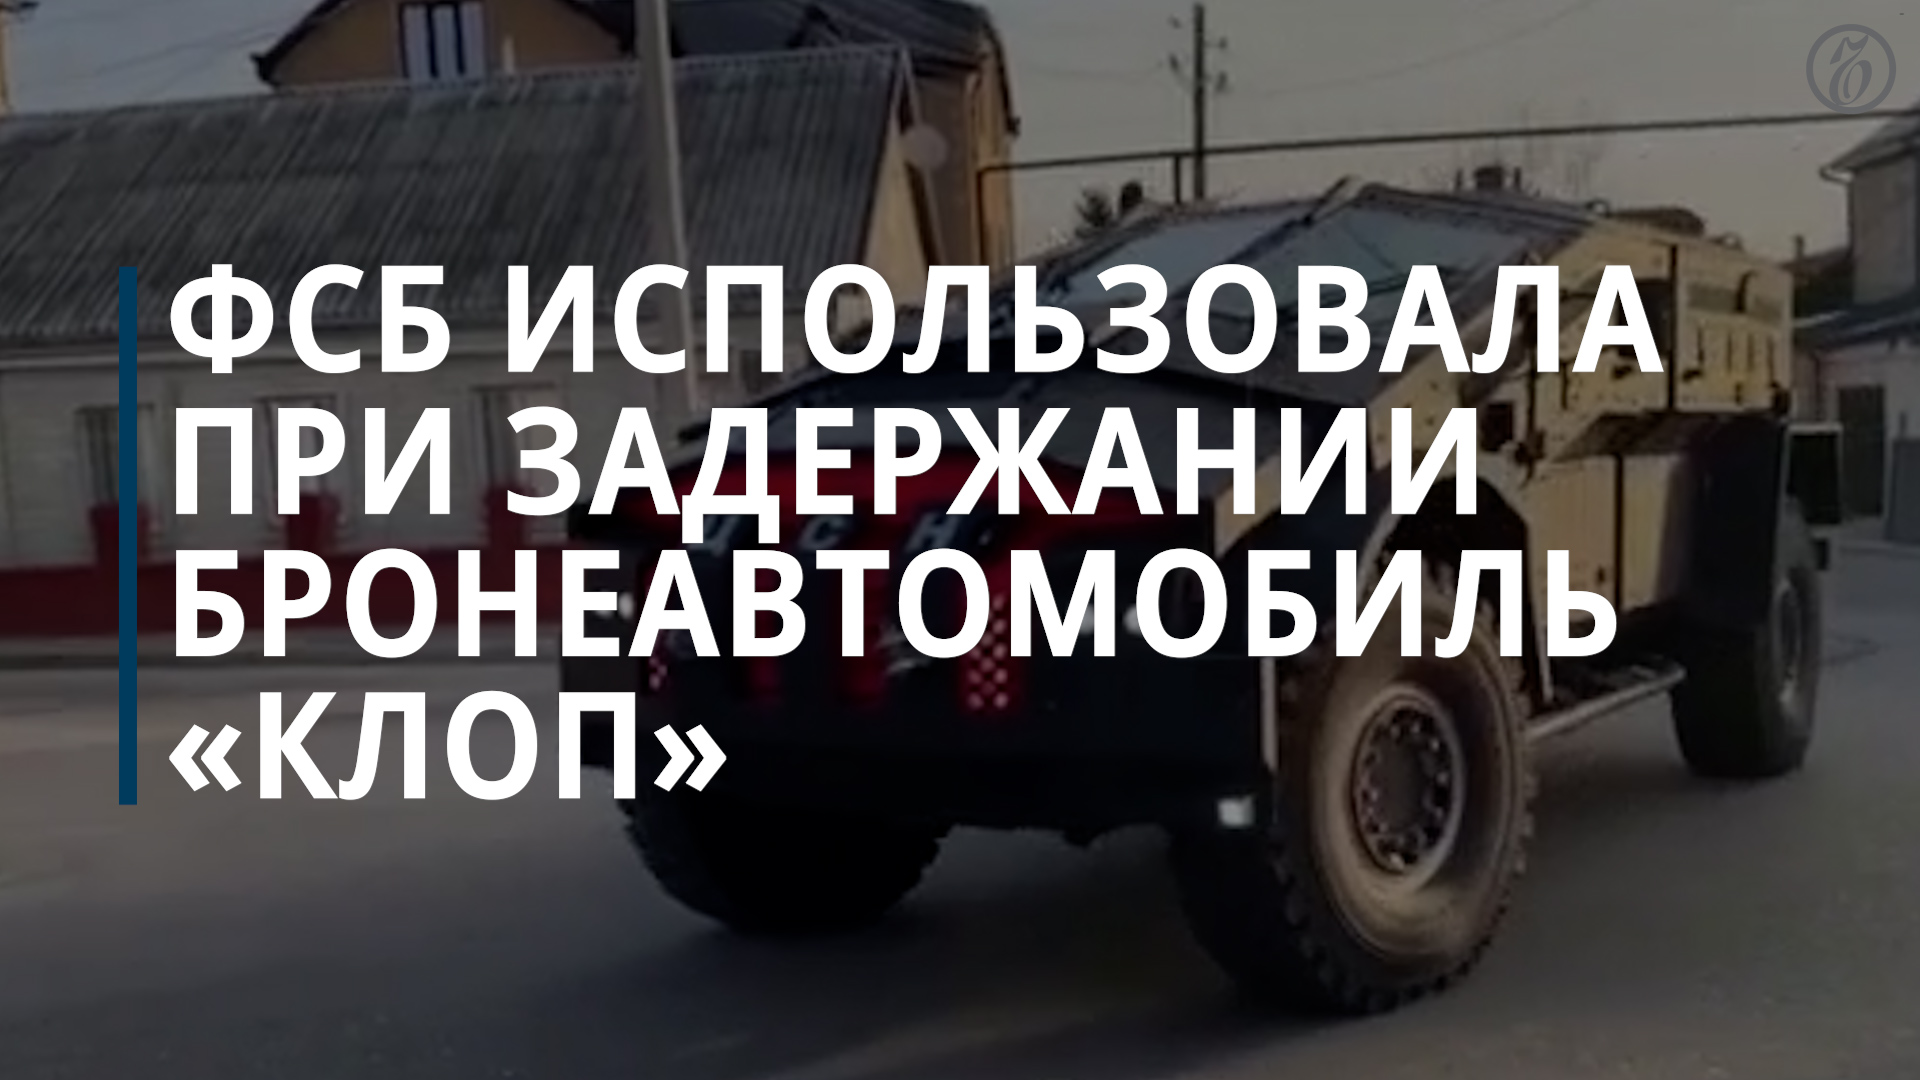 ФСБ использовала при задержании коррупционеров бронеавтомобиль «Клоп» — Коммерсантъ